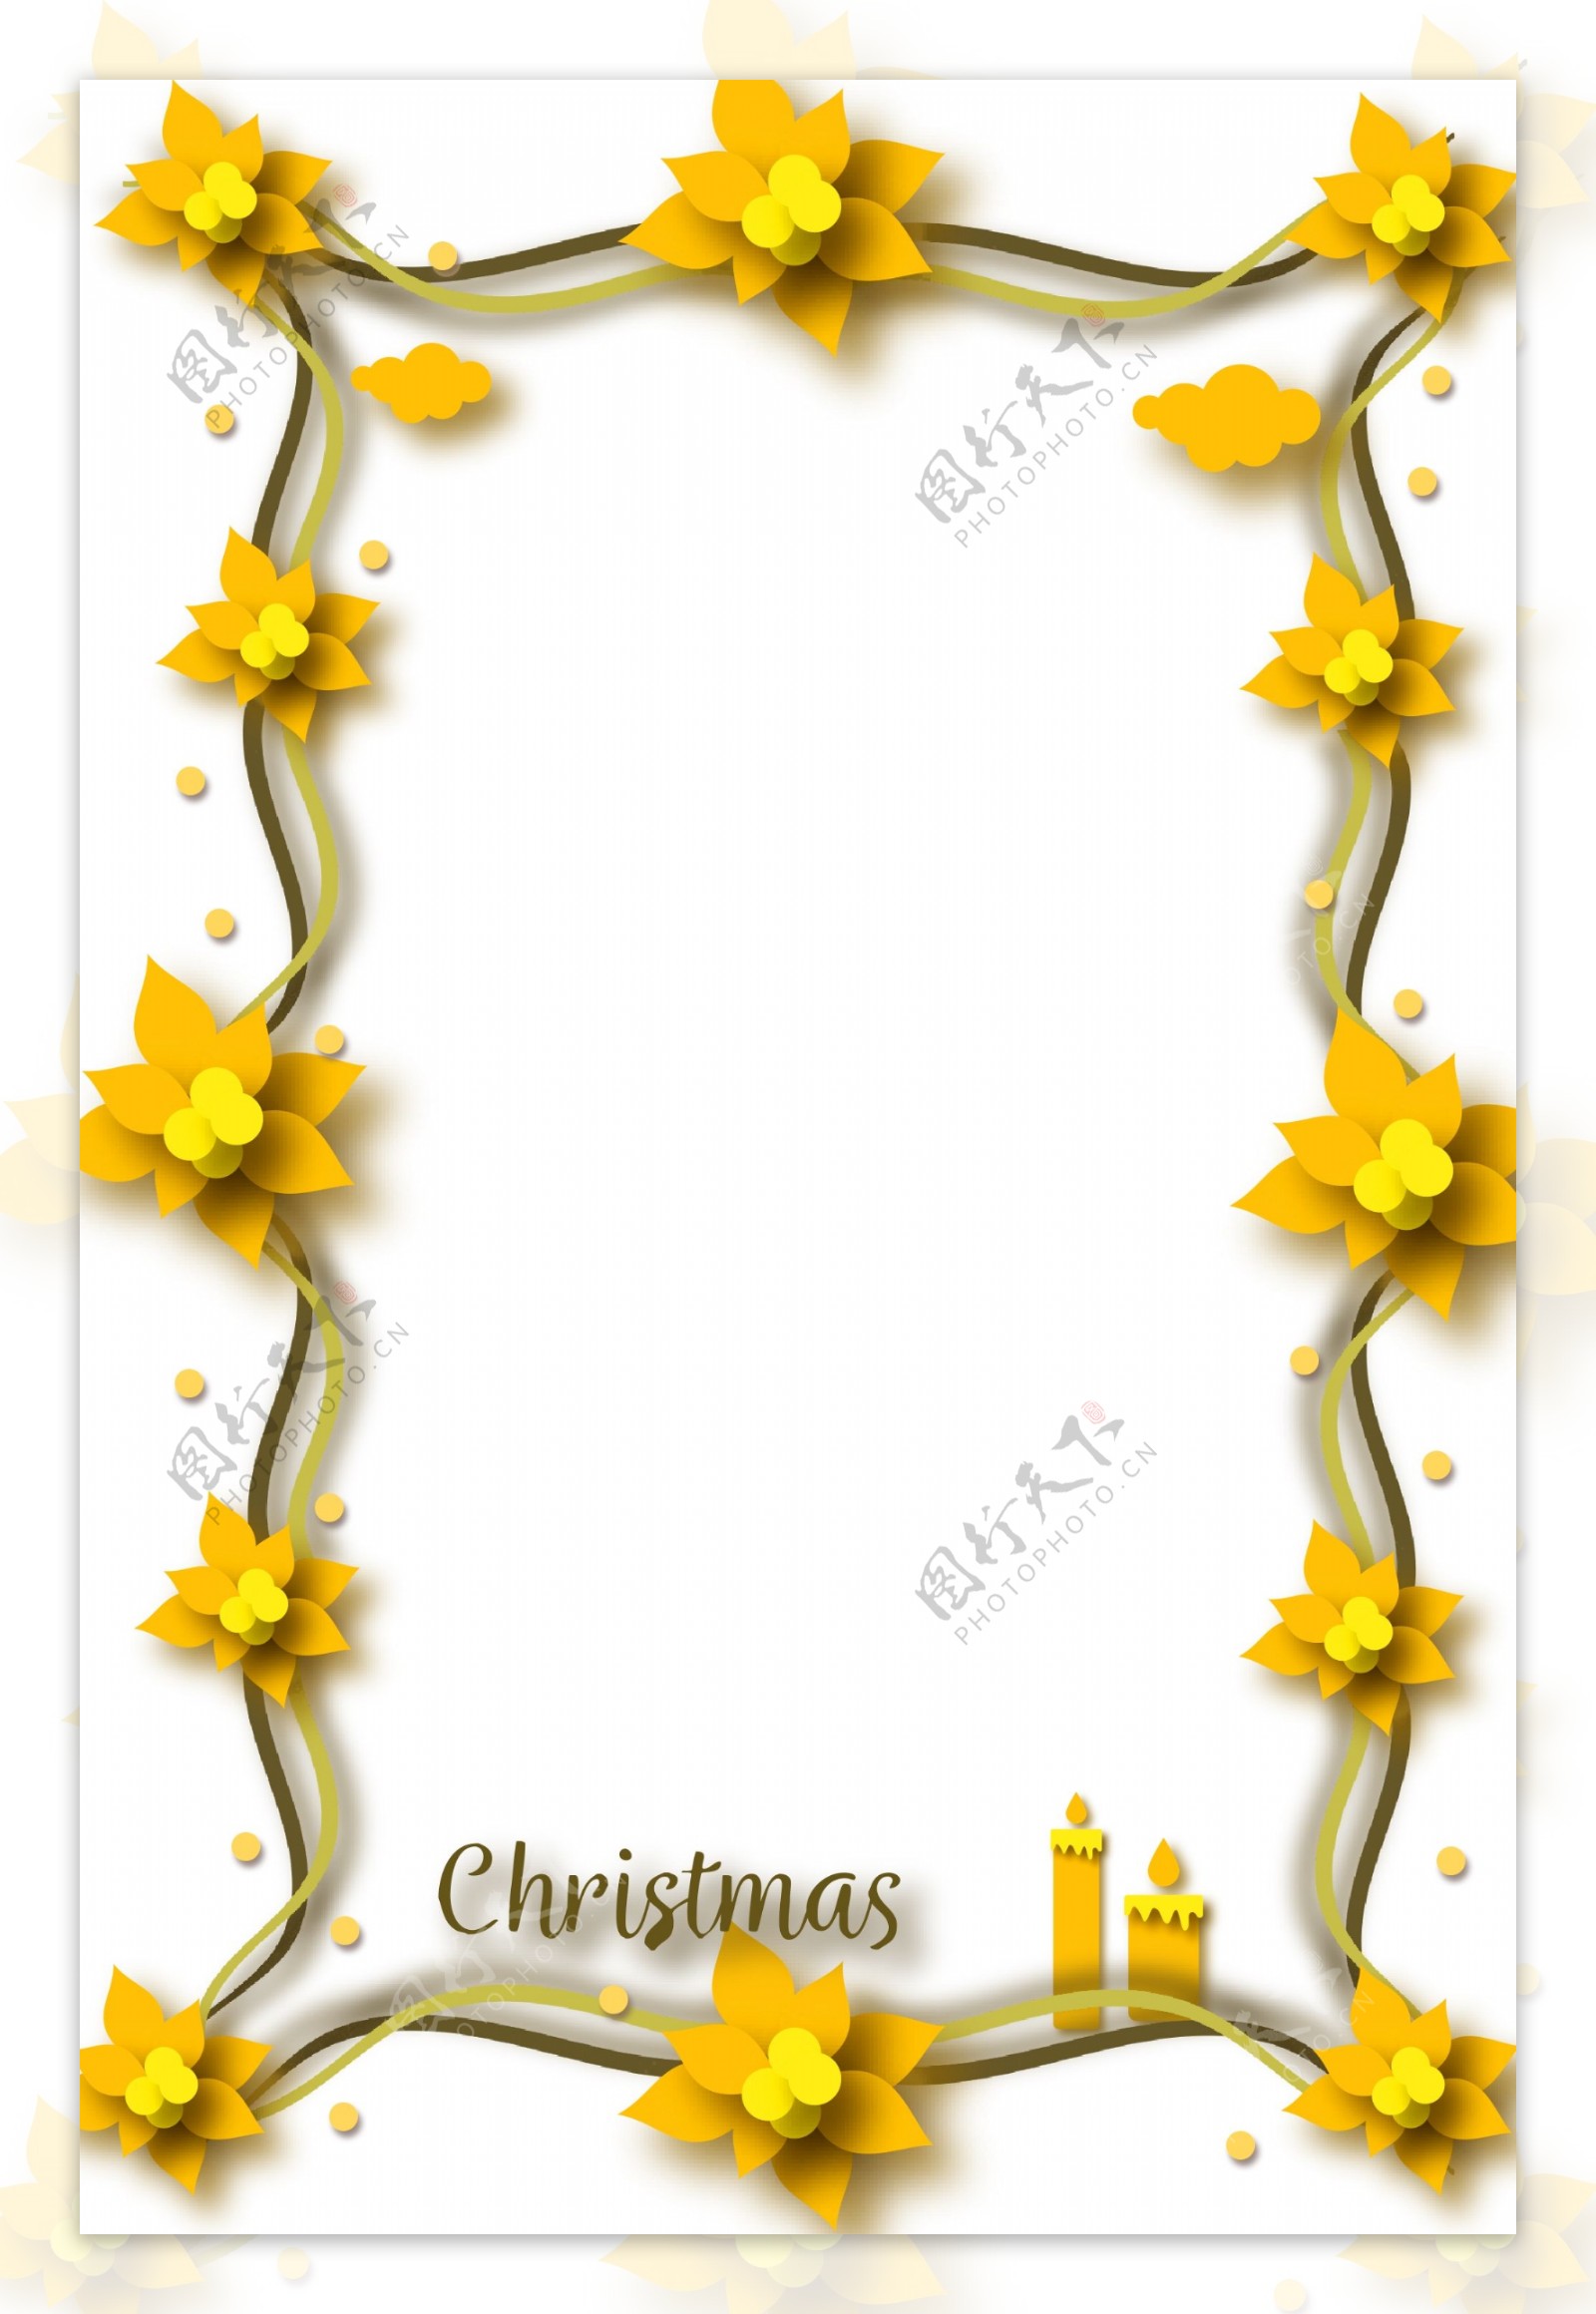 圣诞节黄色小花边框